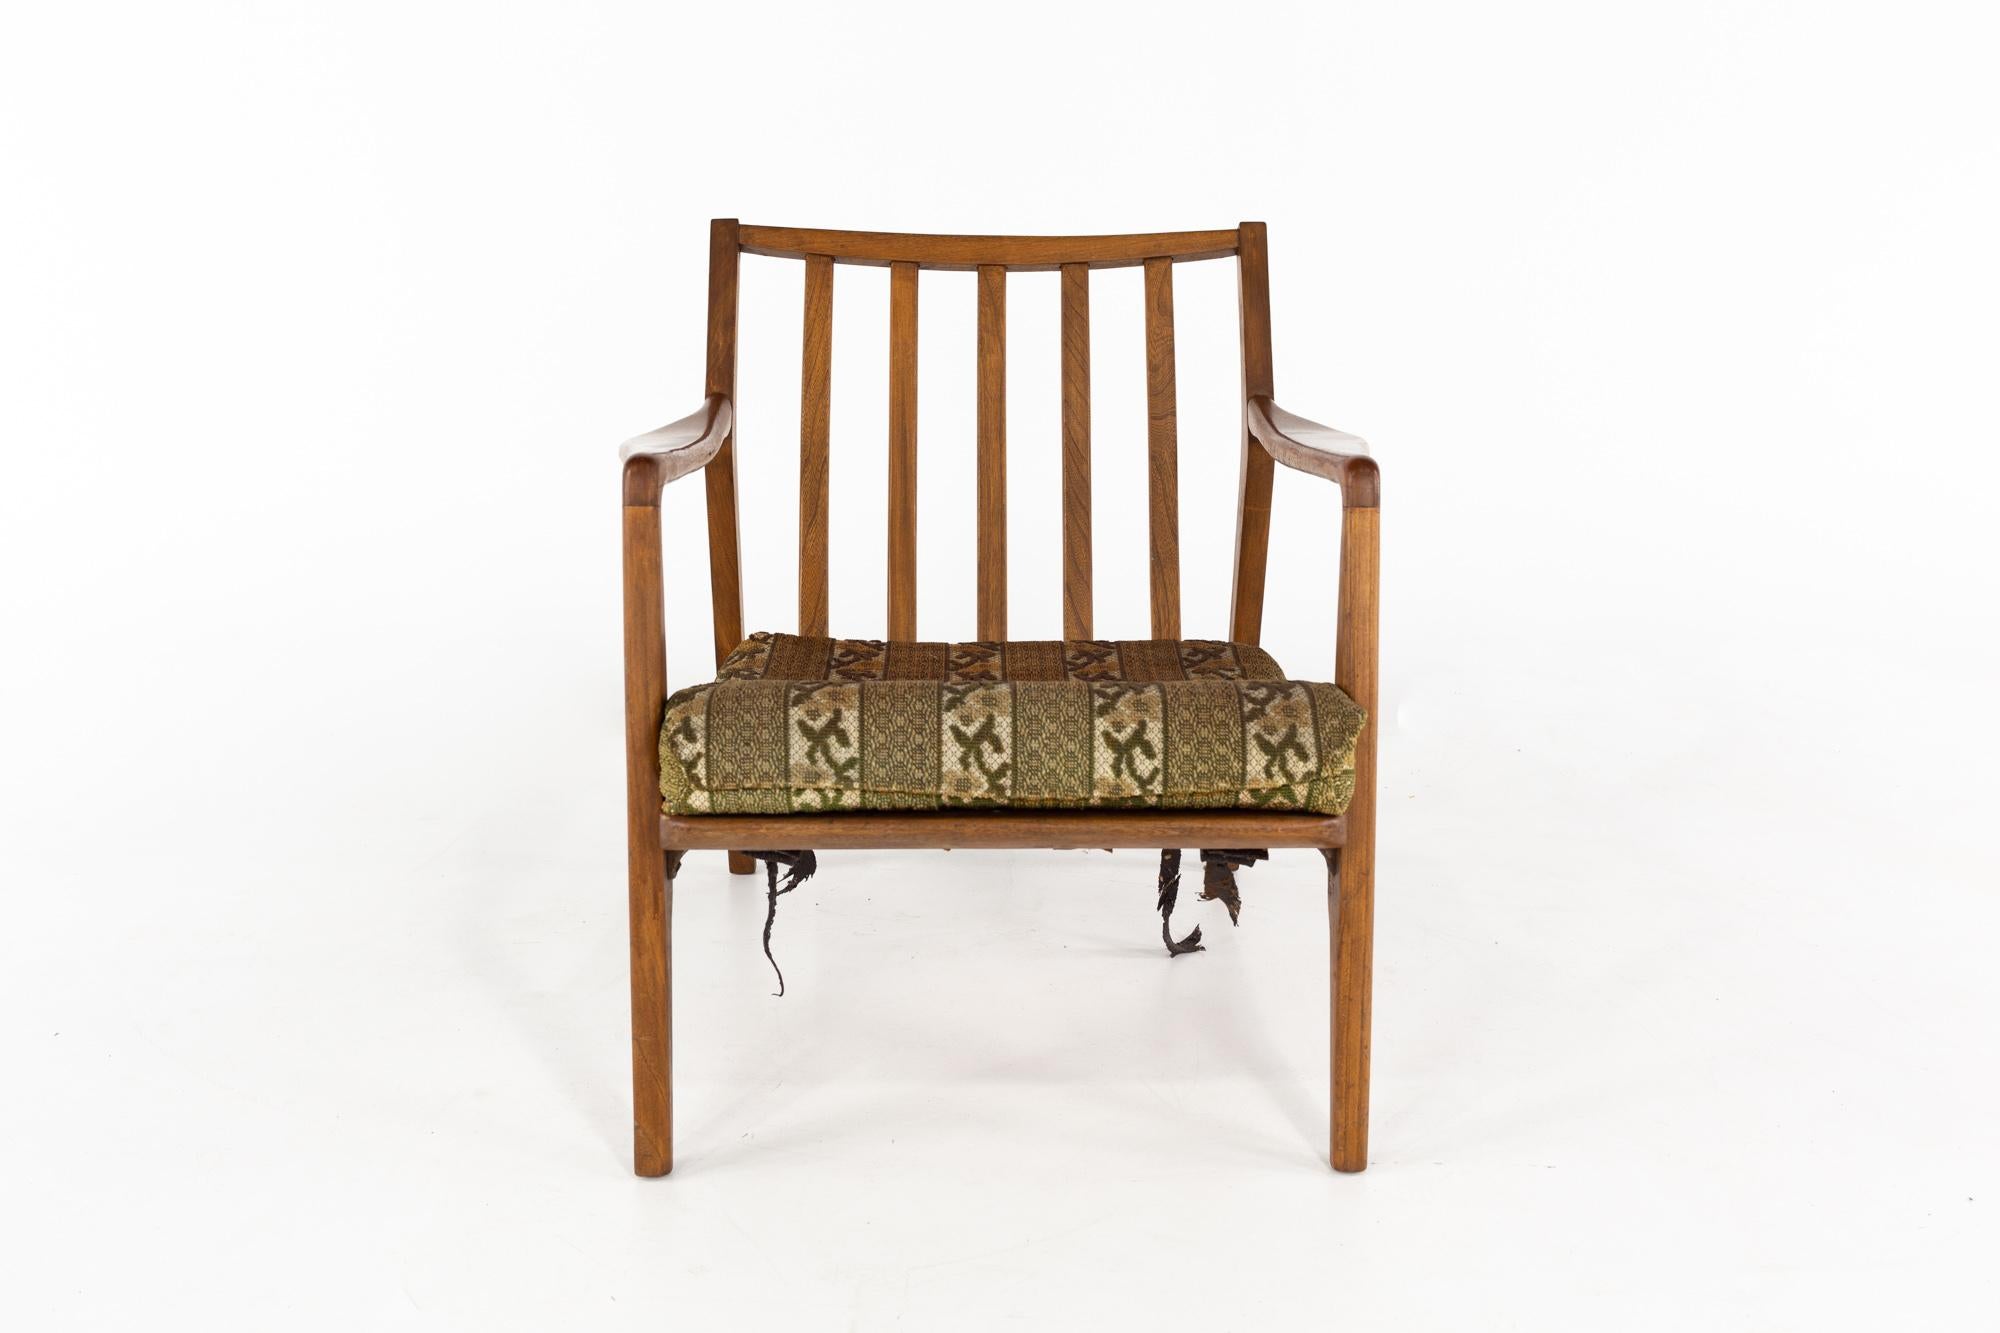 Kofod Larsen Stil Mid Century Danish Lounge Stuhl

Dieser Stuhl misst: 29 breit x 37 tief x 30,5 Zoll hoch, mit einer Sitzhöhe von 23 und Armhöhe von 16 Zoll

Alle Möbelstücke sind in einem so genannten restaurierten Vintage-Zustand zu haben. Das